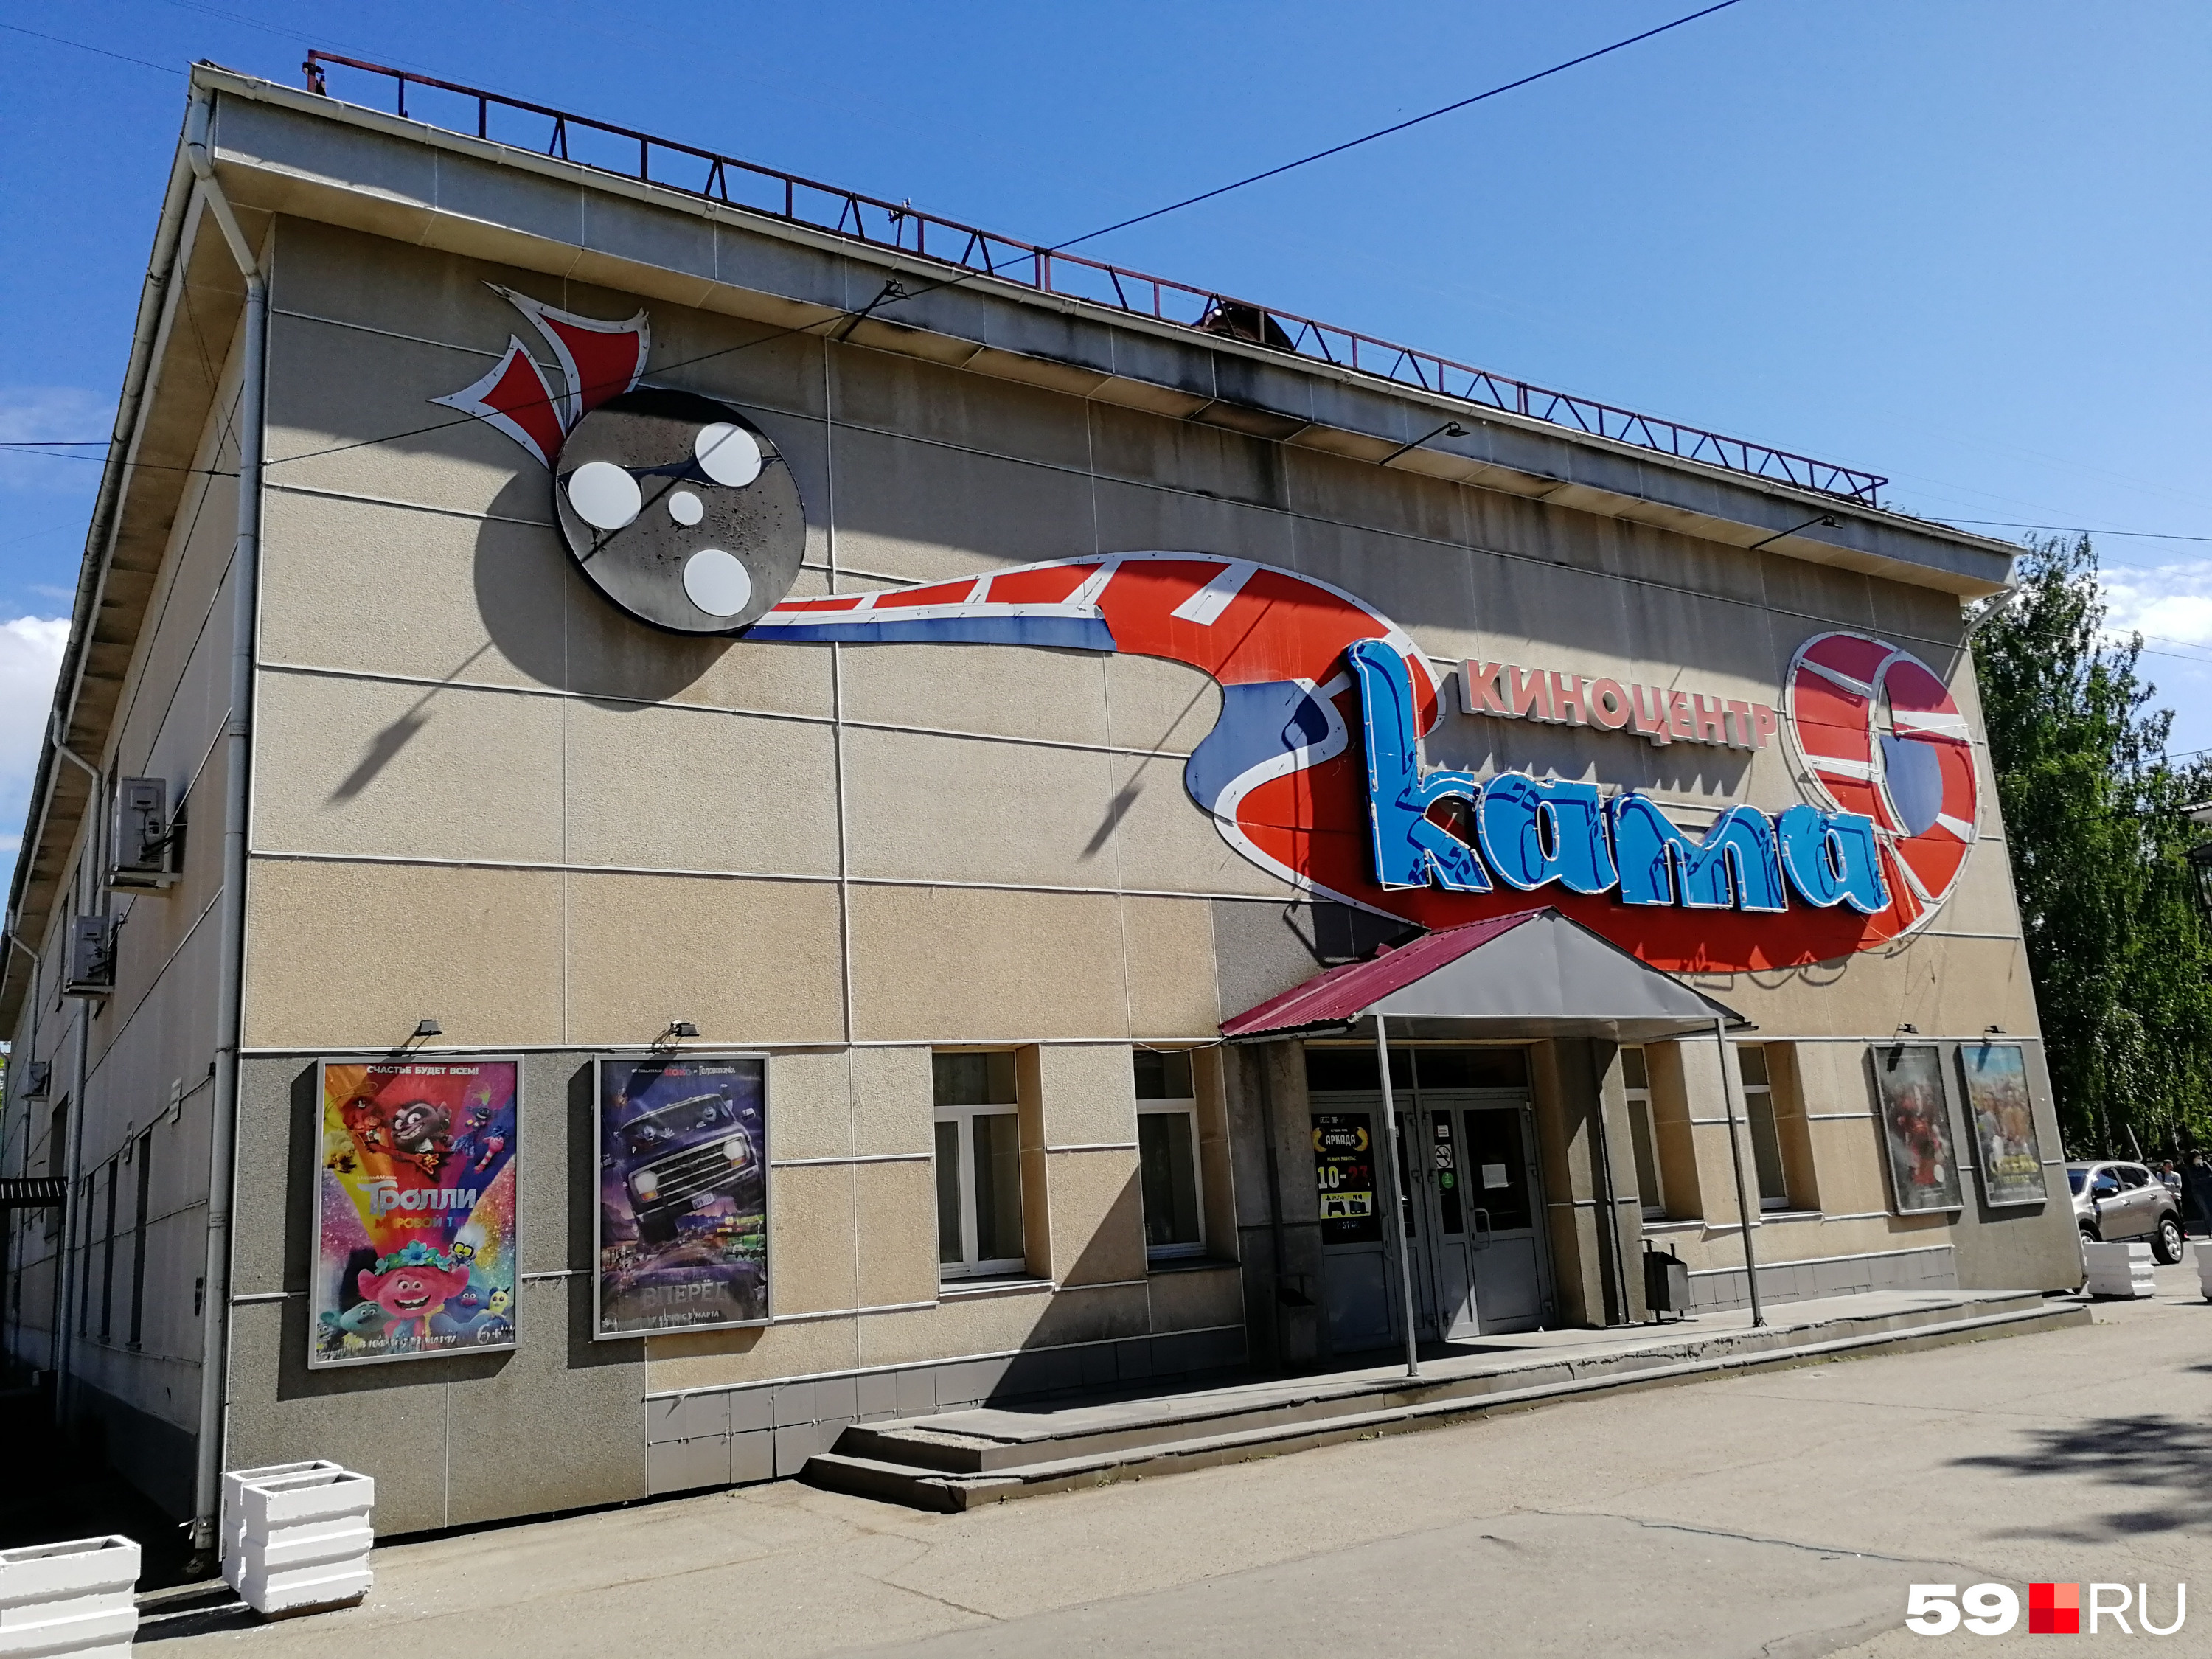 Кинотеатр молодой — открылся в 2008 году